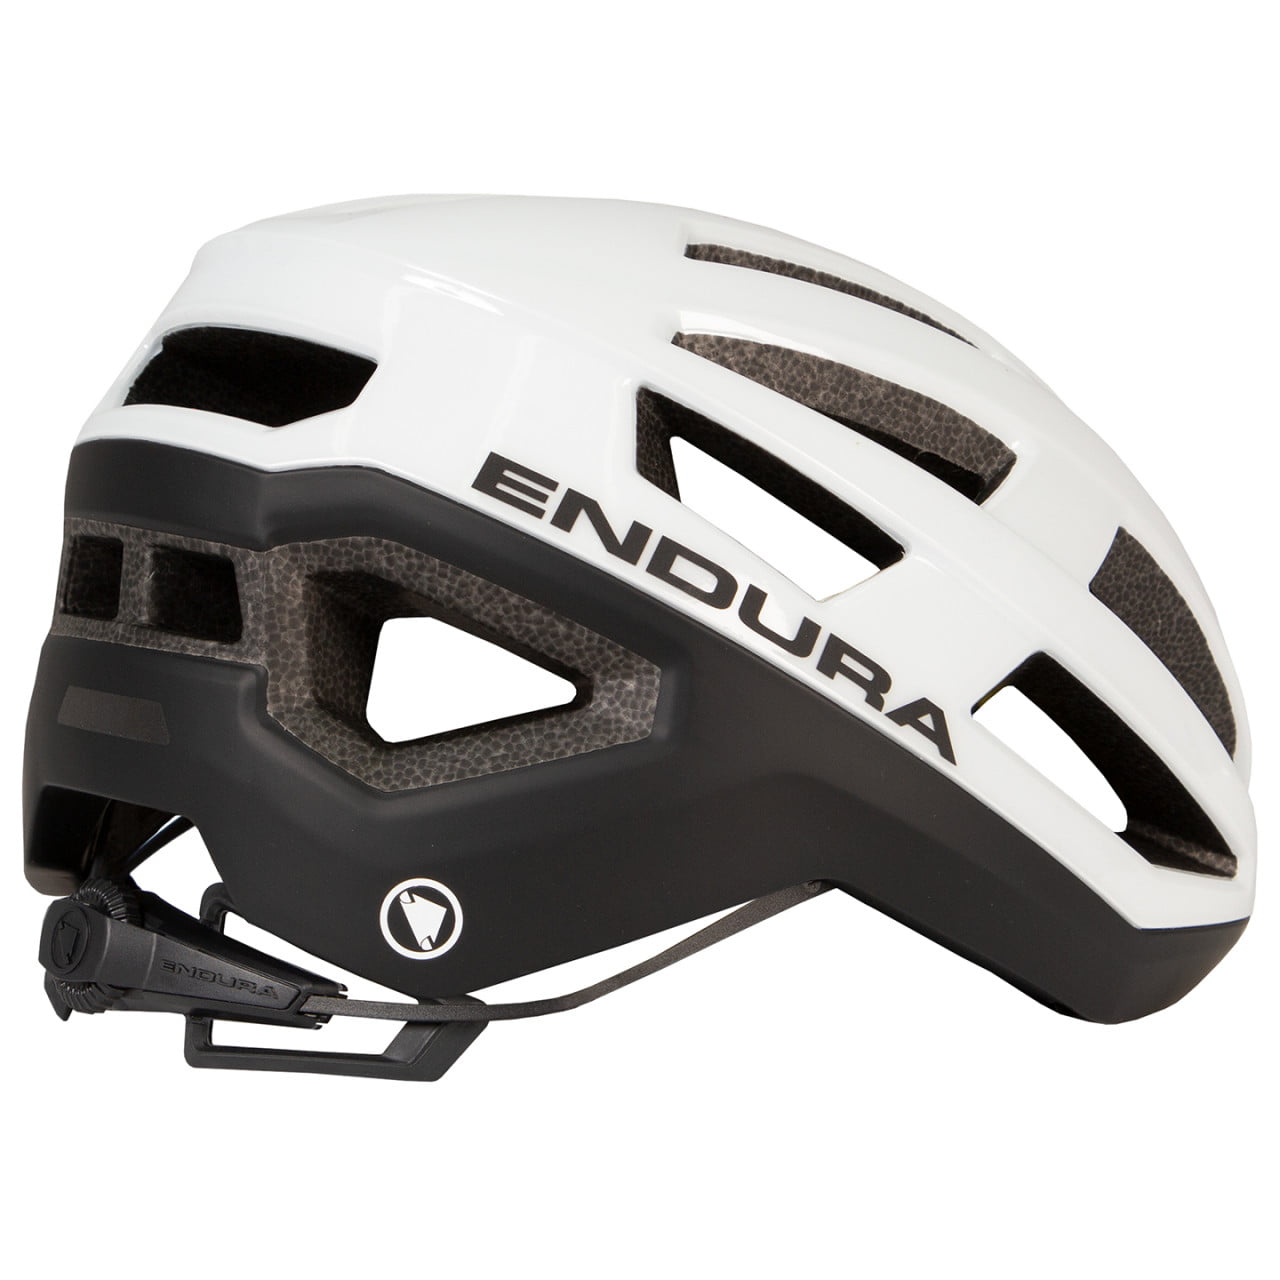 FS260-Pro II Cycling Helmet